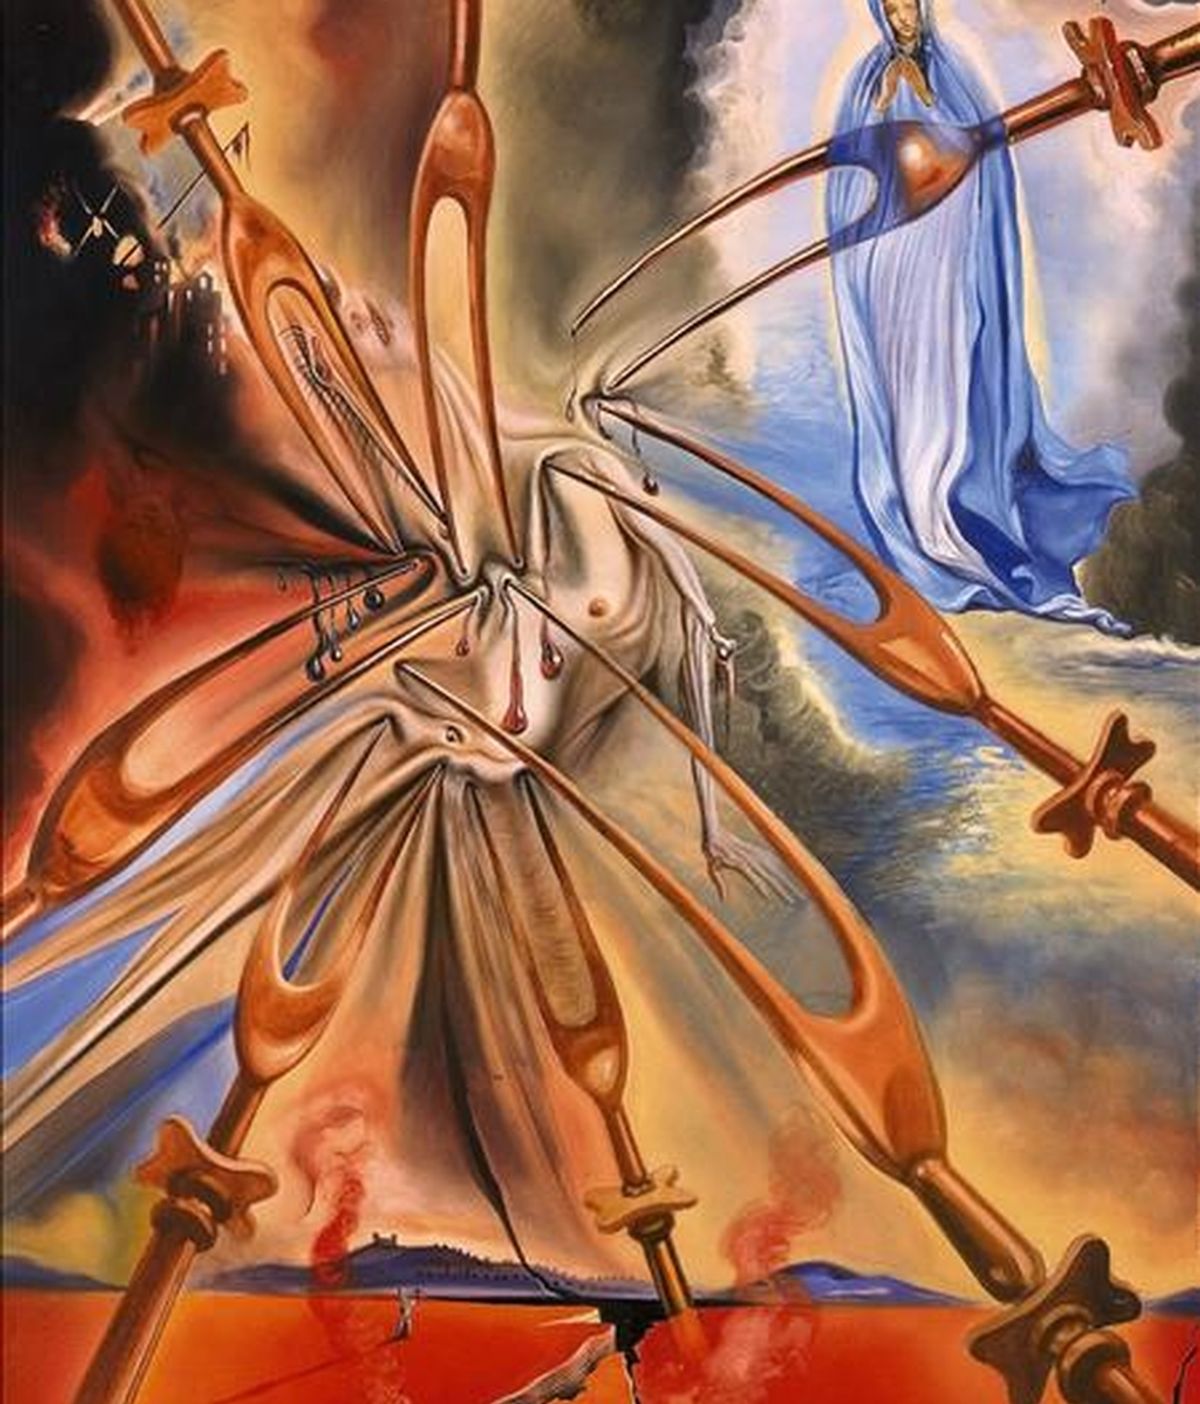 Imagen de "La visión del infierno", de Salvador Dalí, cedida este 30 de septiembre que hará parte de una exposición en la sede de Sotheby's en Nueva York, EE.UU., que recoge obras de artistas clásicos y contemporáneos inspirados por el poema épico, "La Divina Comedia", escrito por Dante Alighieri. EFE